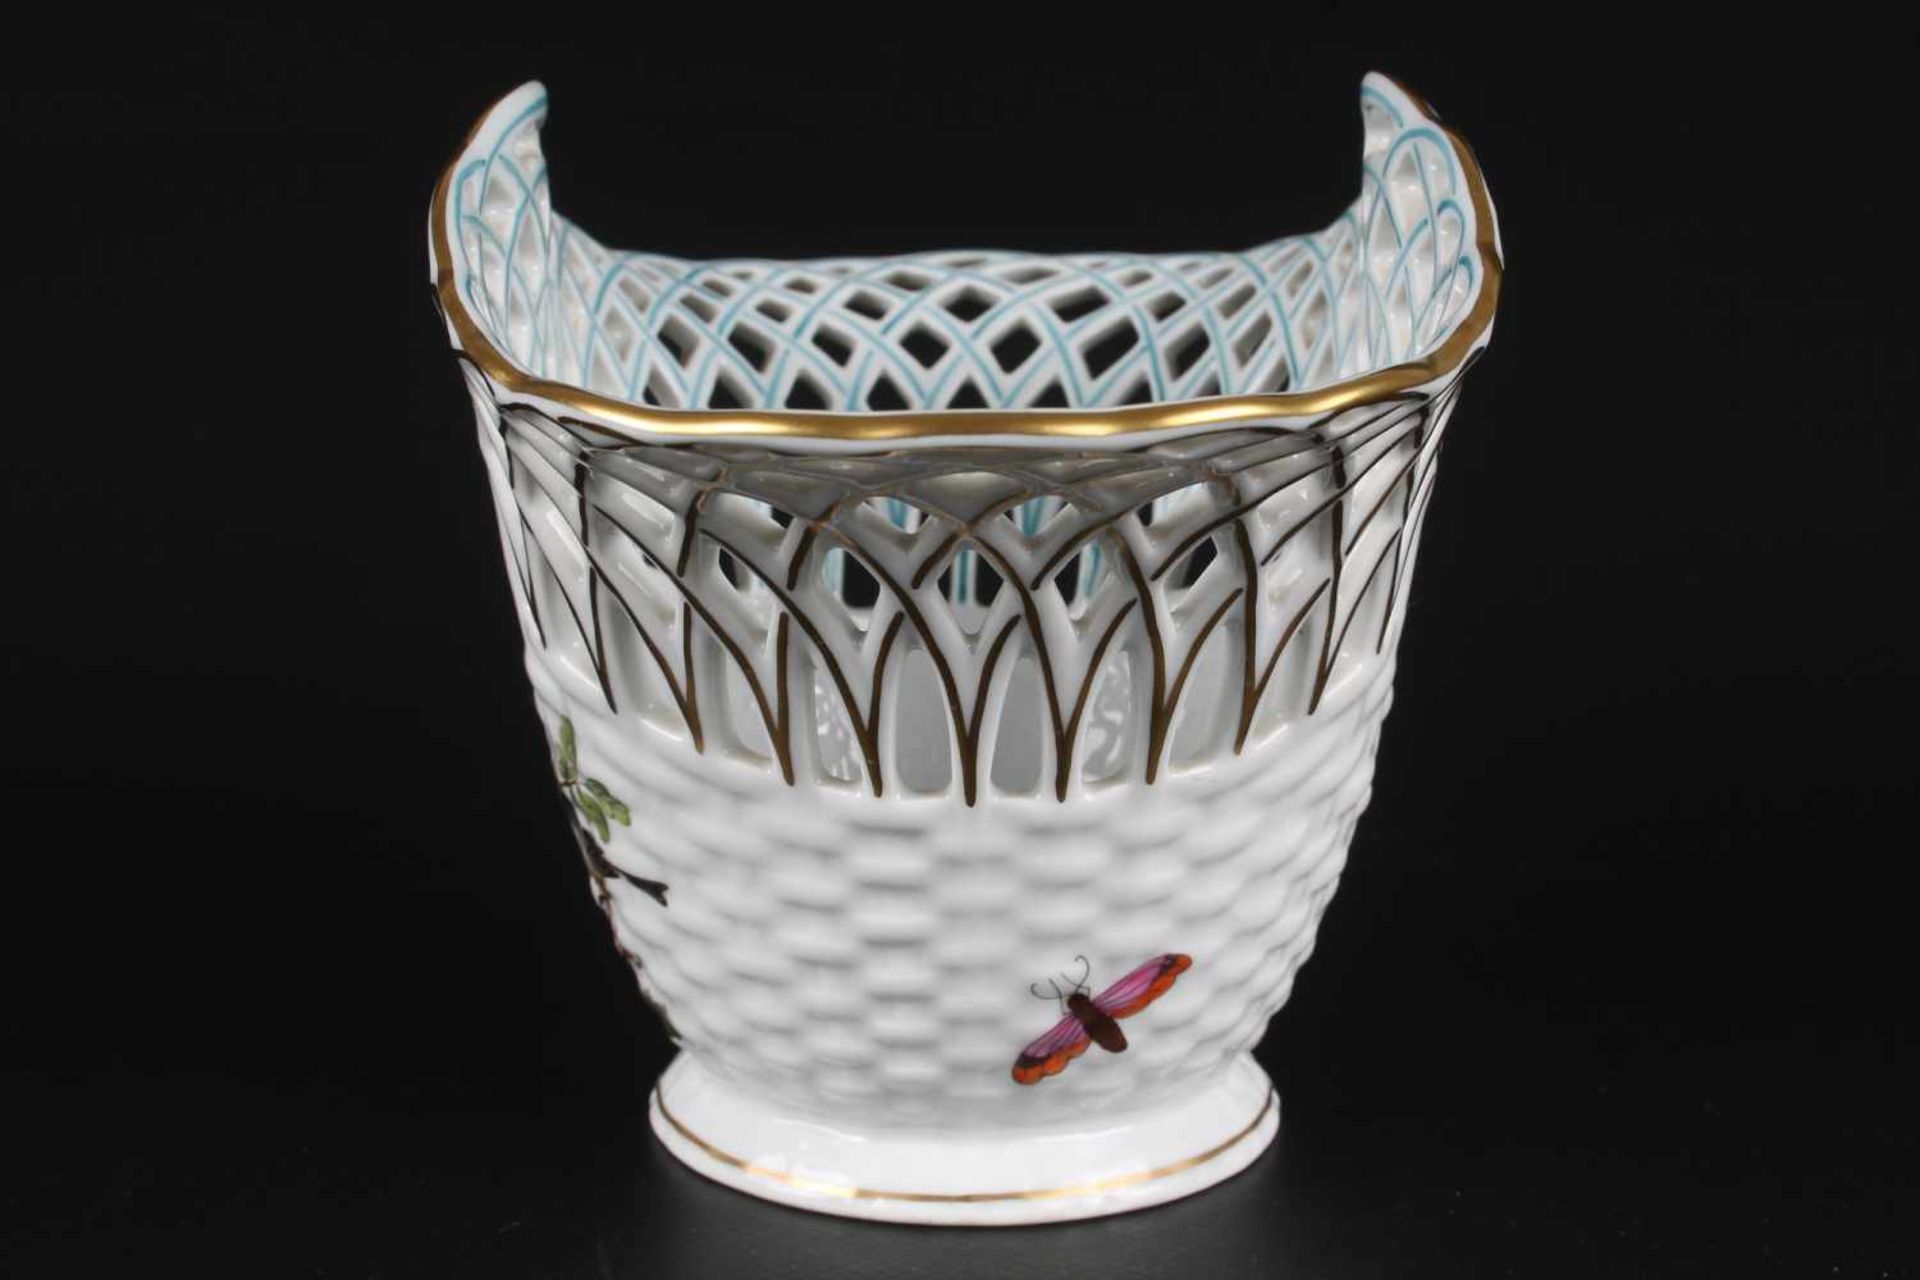 Herend Rothschild Schale bowl,Porzellan, Ungarn 20. Jahrhundert, Dekor Rothschild, Durchbrucharbeit, - Image 3 of 5